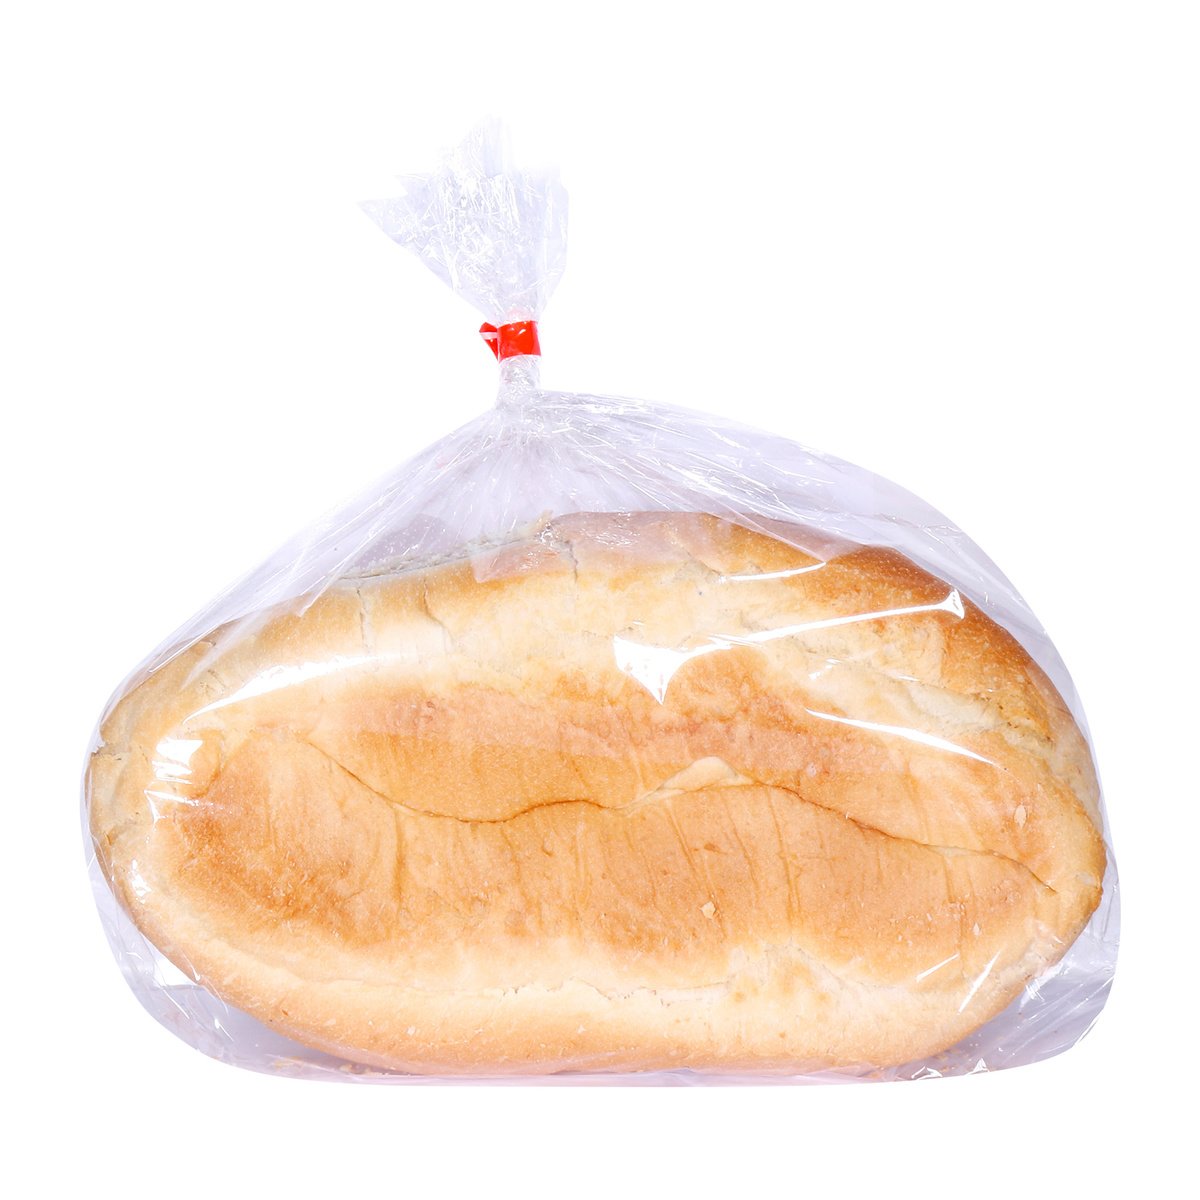 لولو خبز أبيض مقرمش قطعة واحدة